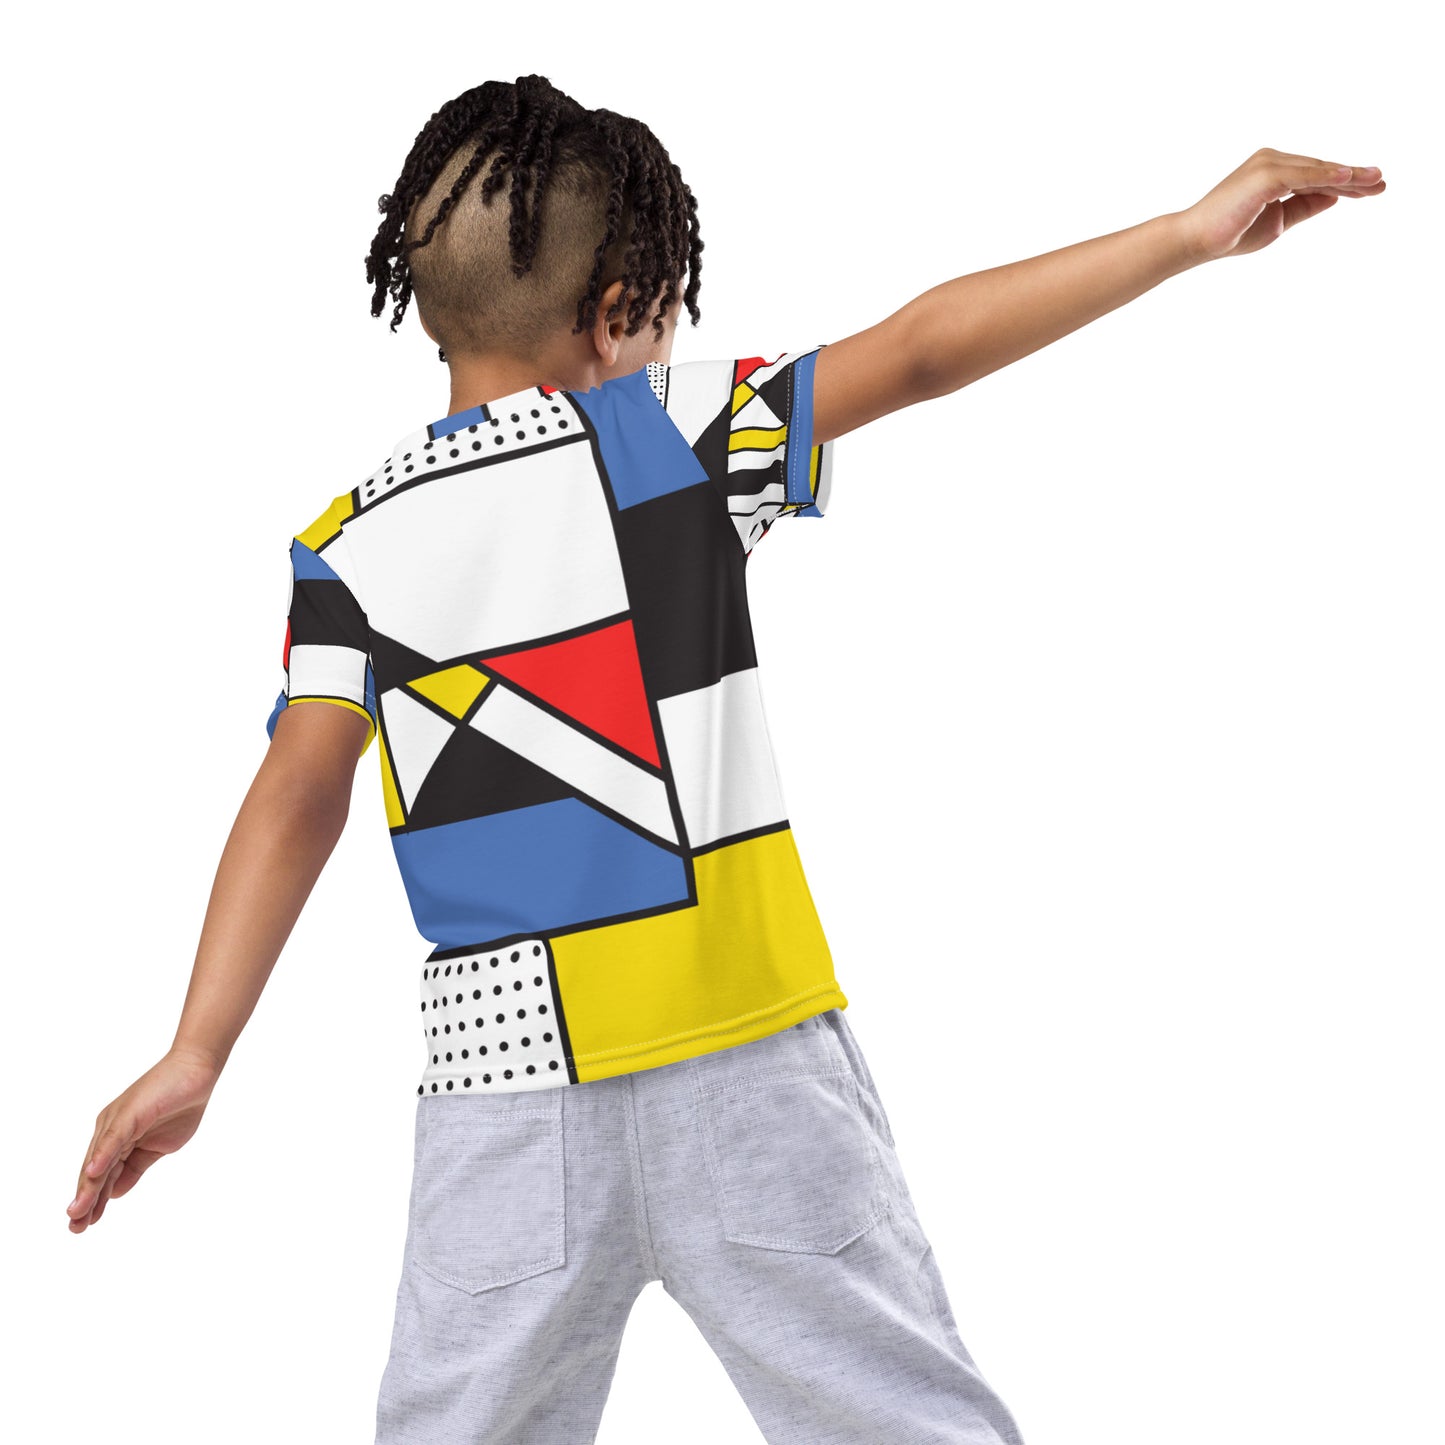 Kids crew neck t-shirt with Piet Mondrian design sourced Vecteezy.com